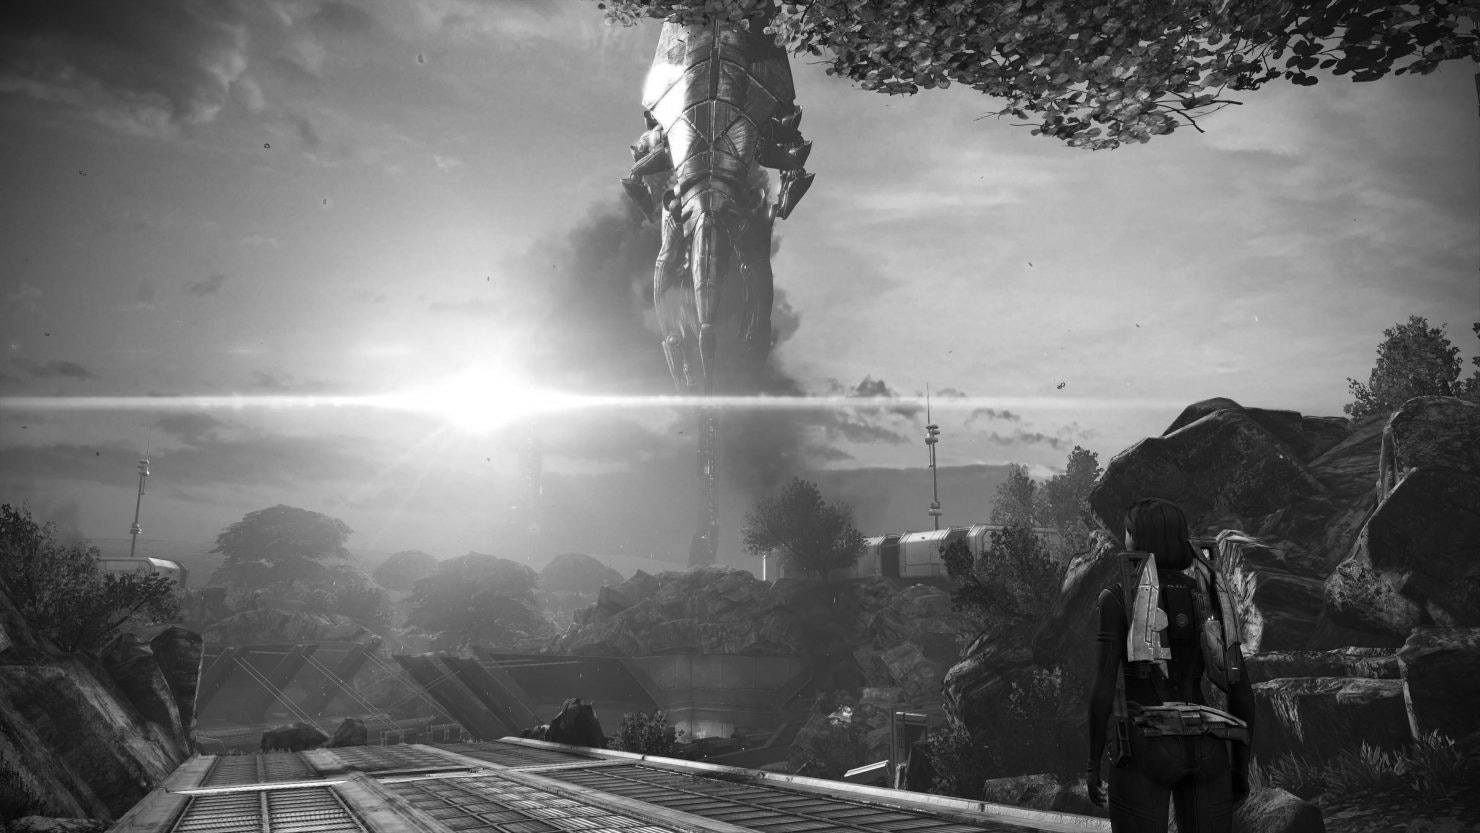 Mass Effect: Legendary Edition 2020 - Launch